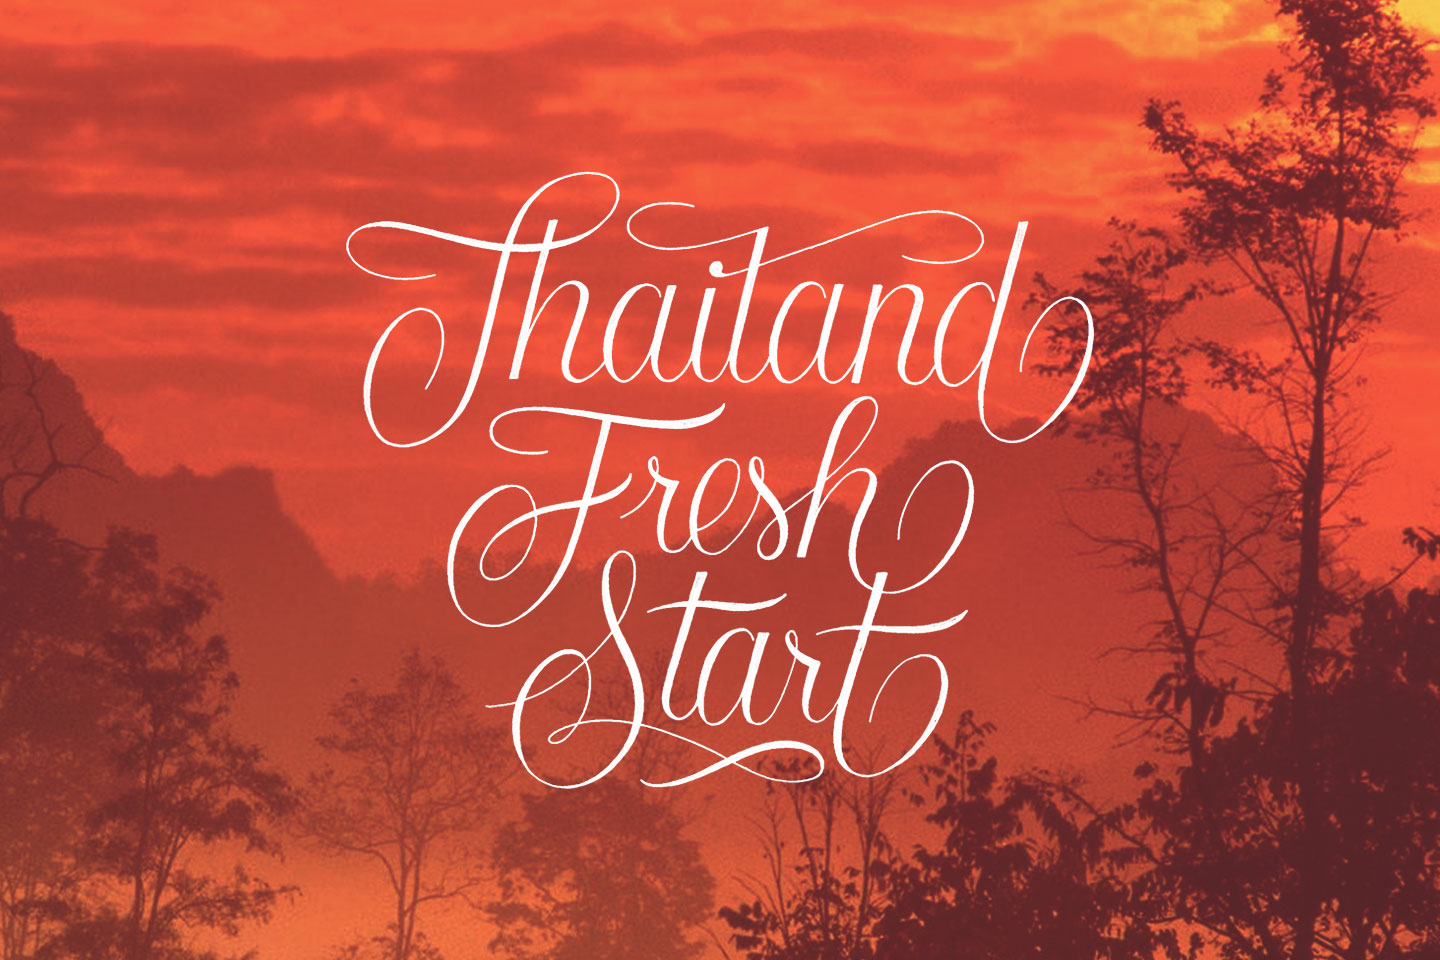 Thailand Fresh Start